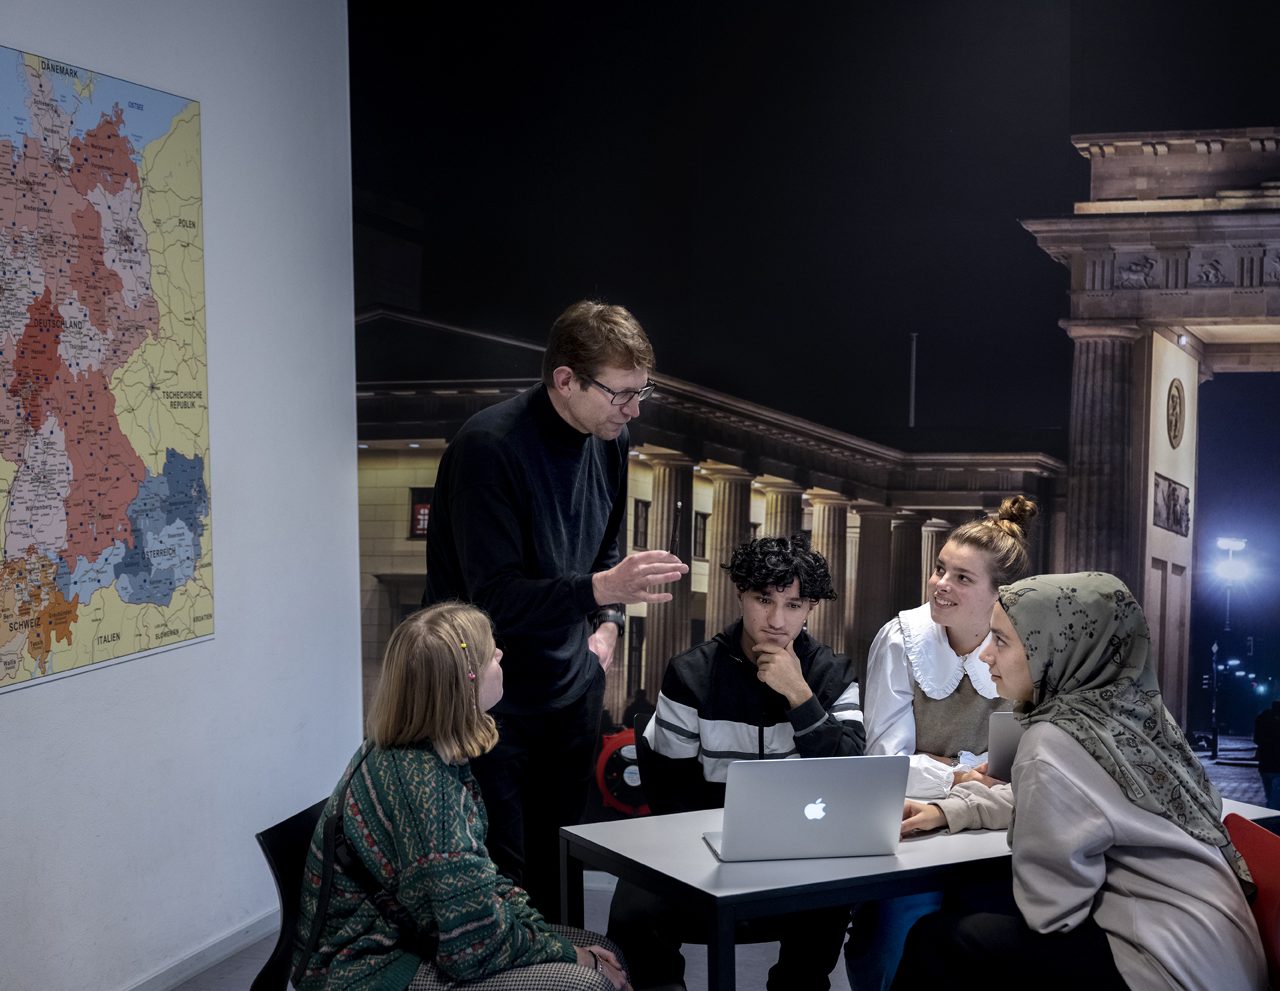 En mangfoldig gruppe på fem personer, inklusive en foredragsholder, engagerede sig i en livlig diskussion ved et bord med en bærbar computer i et rum med et kort over Tyskland på væggen og udsigt til en neoklassisk bygning udenfor.